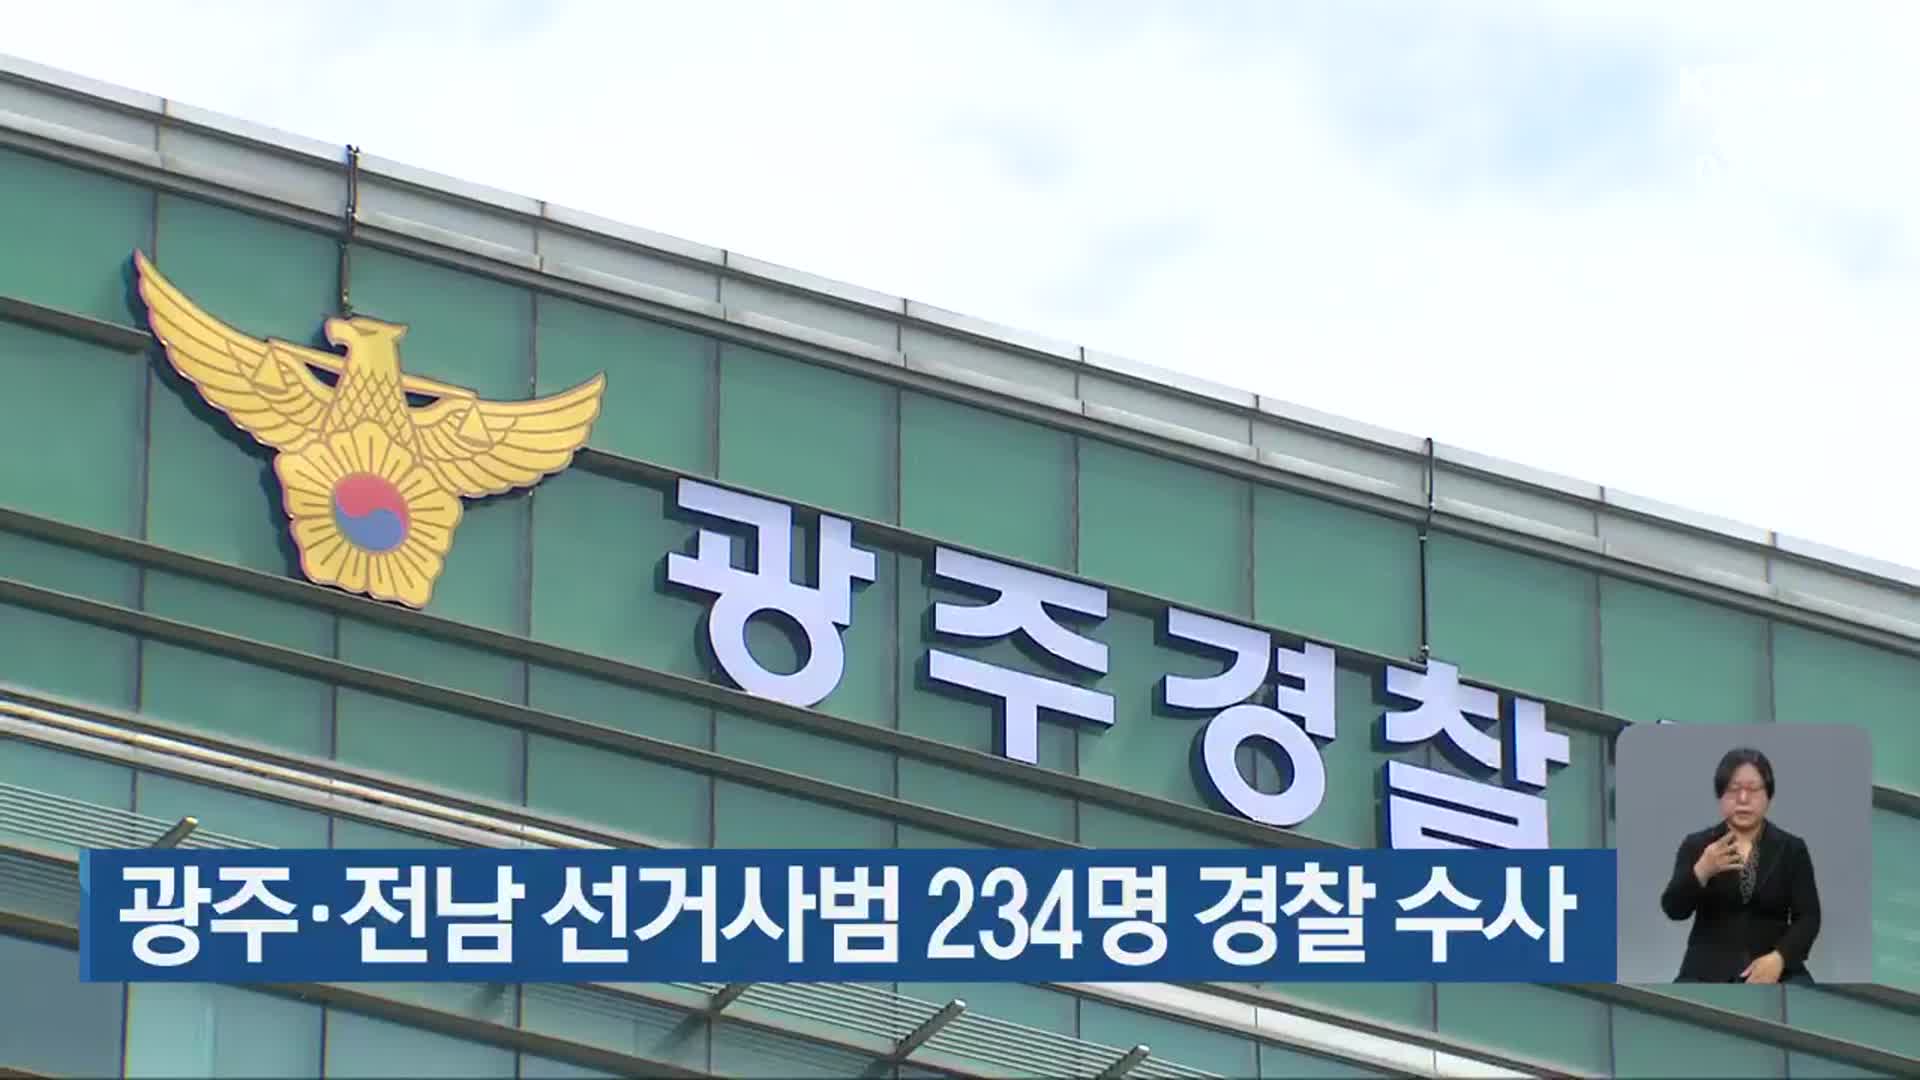 광주·전남 선거사범 234명 경찰 수사